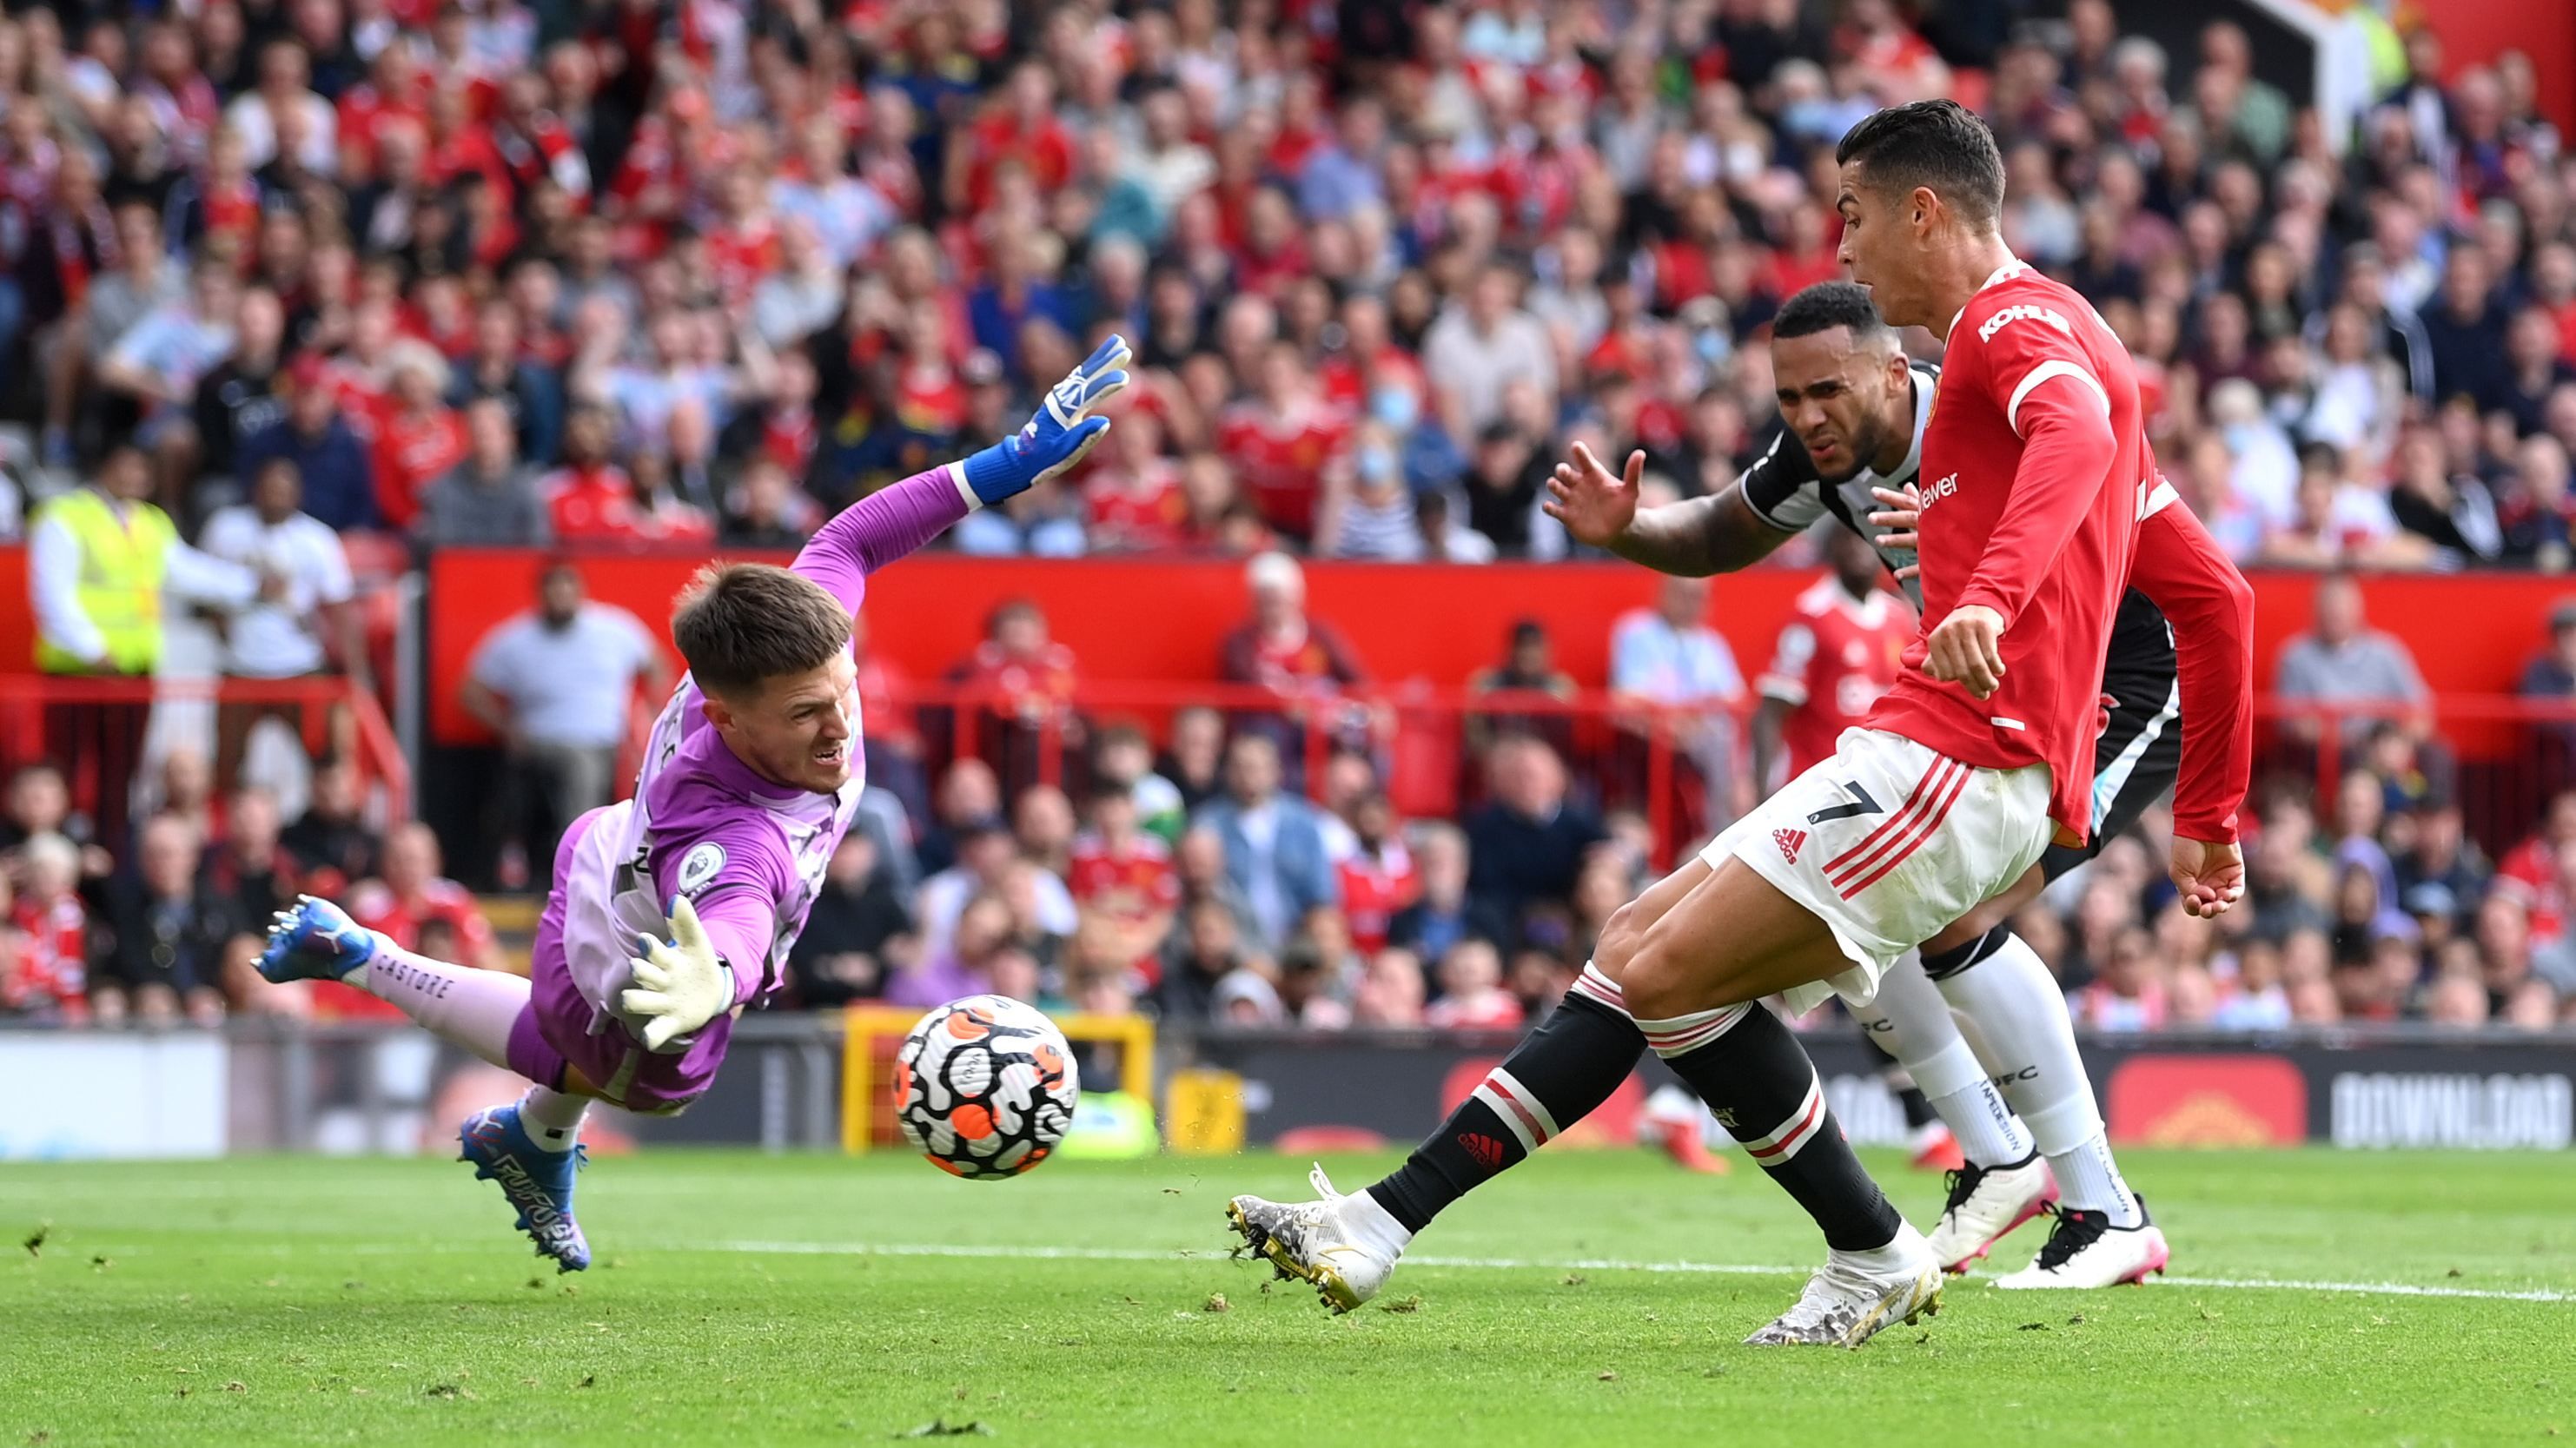 Роналду забив перший гол за Манчестер Юнайтед в дебютному матчі: відео - Спорт 24